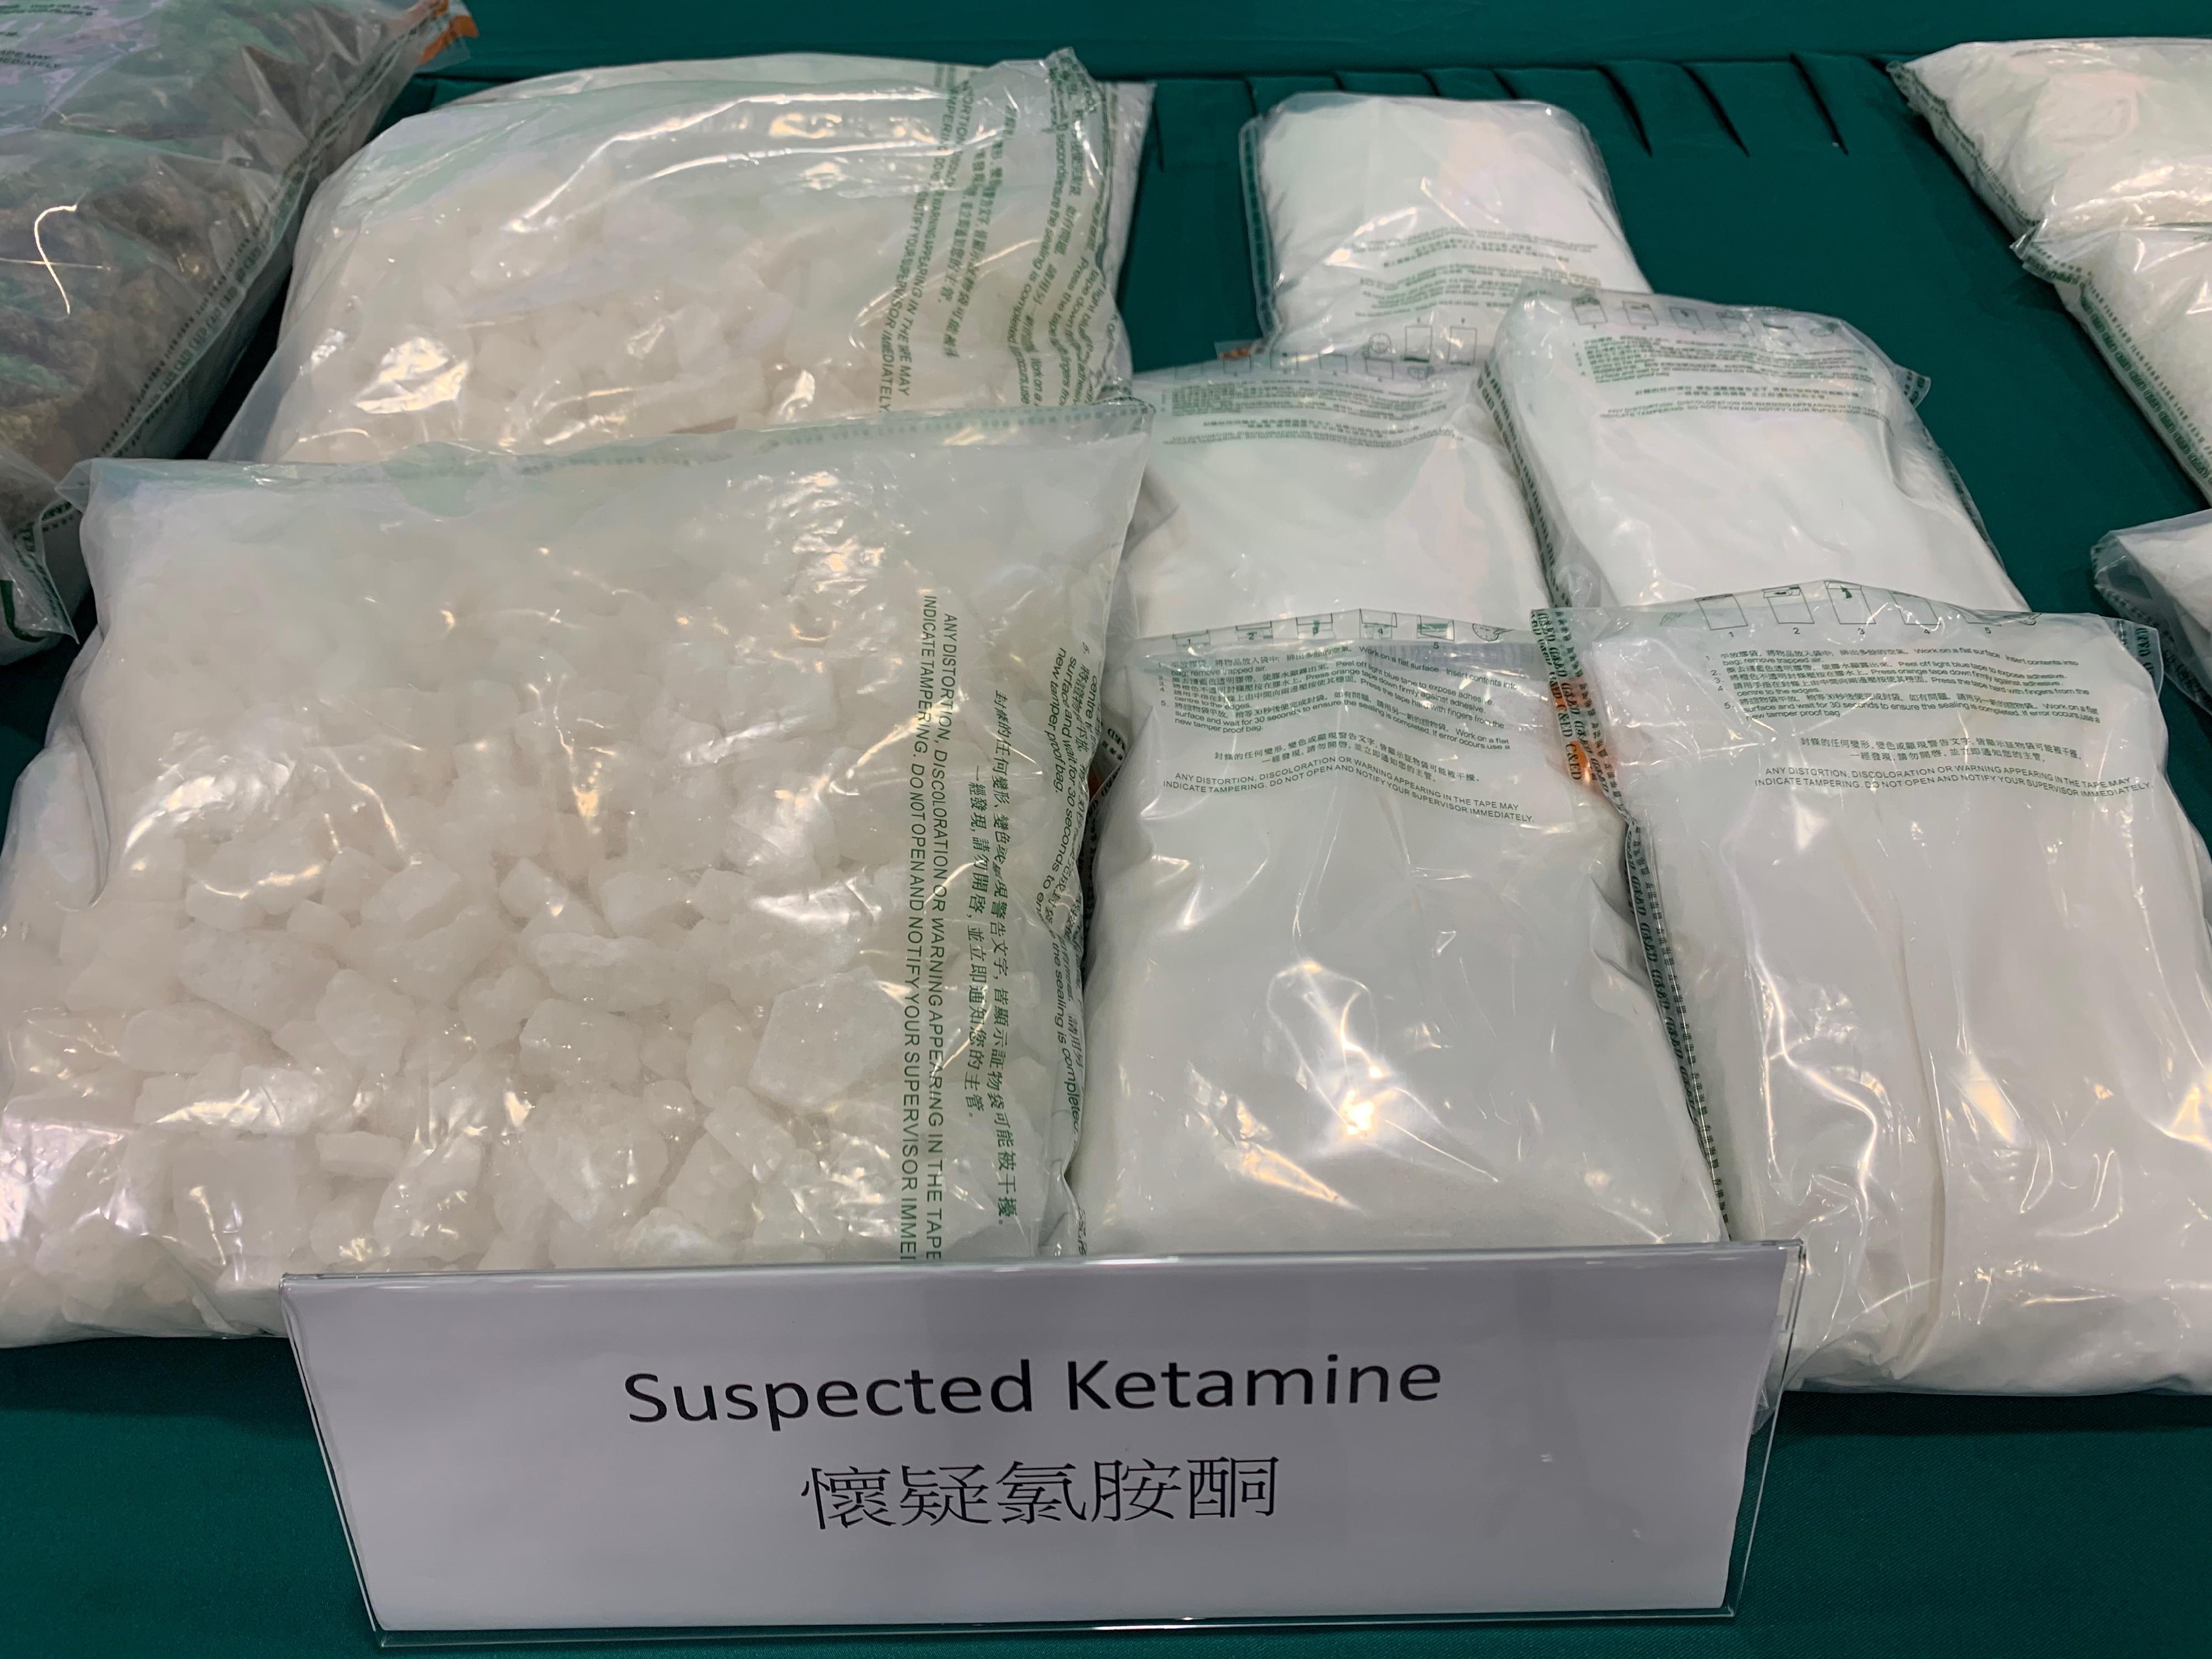 香港海關於六月十二日至八月十一日採取代號「狙擊者」的反毒品行動，打擊利用集運方式販運毒品。圖示行動中檢獲的部分懷疑氯胺酮。